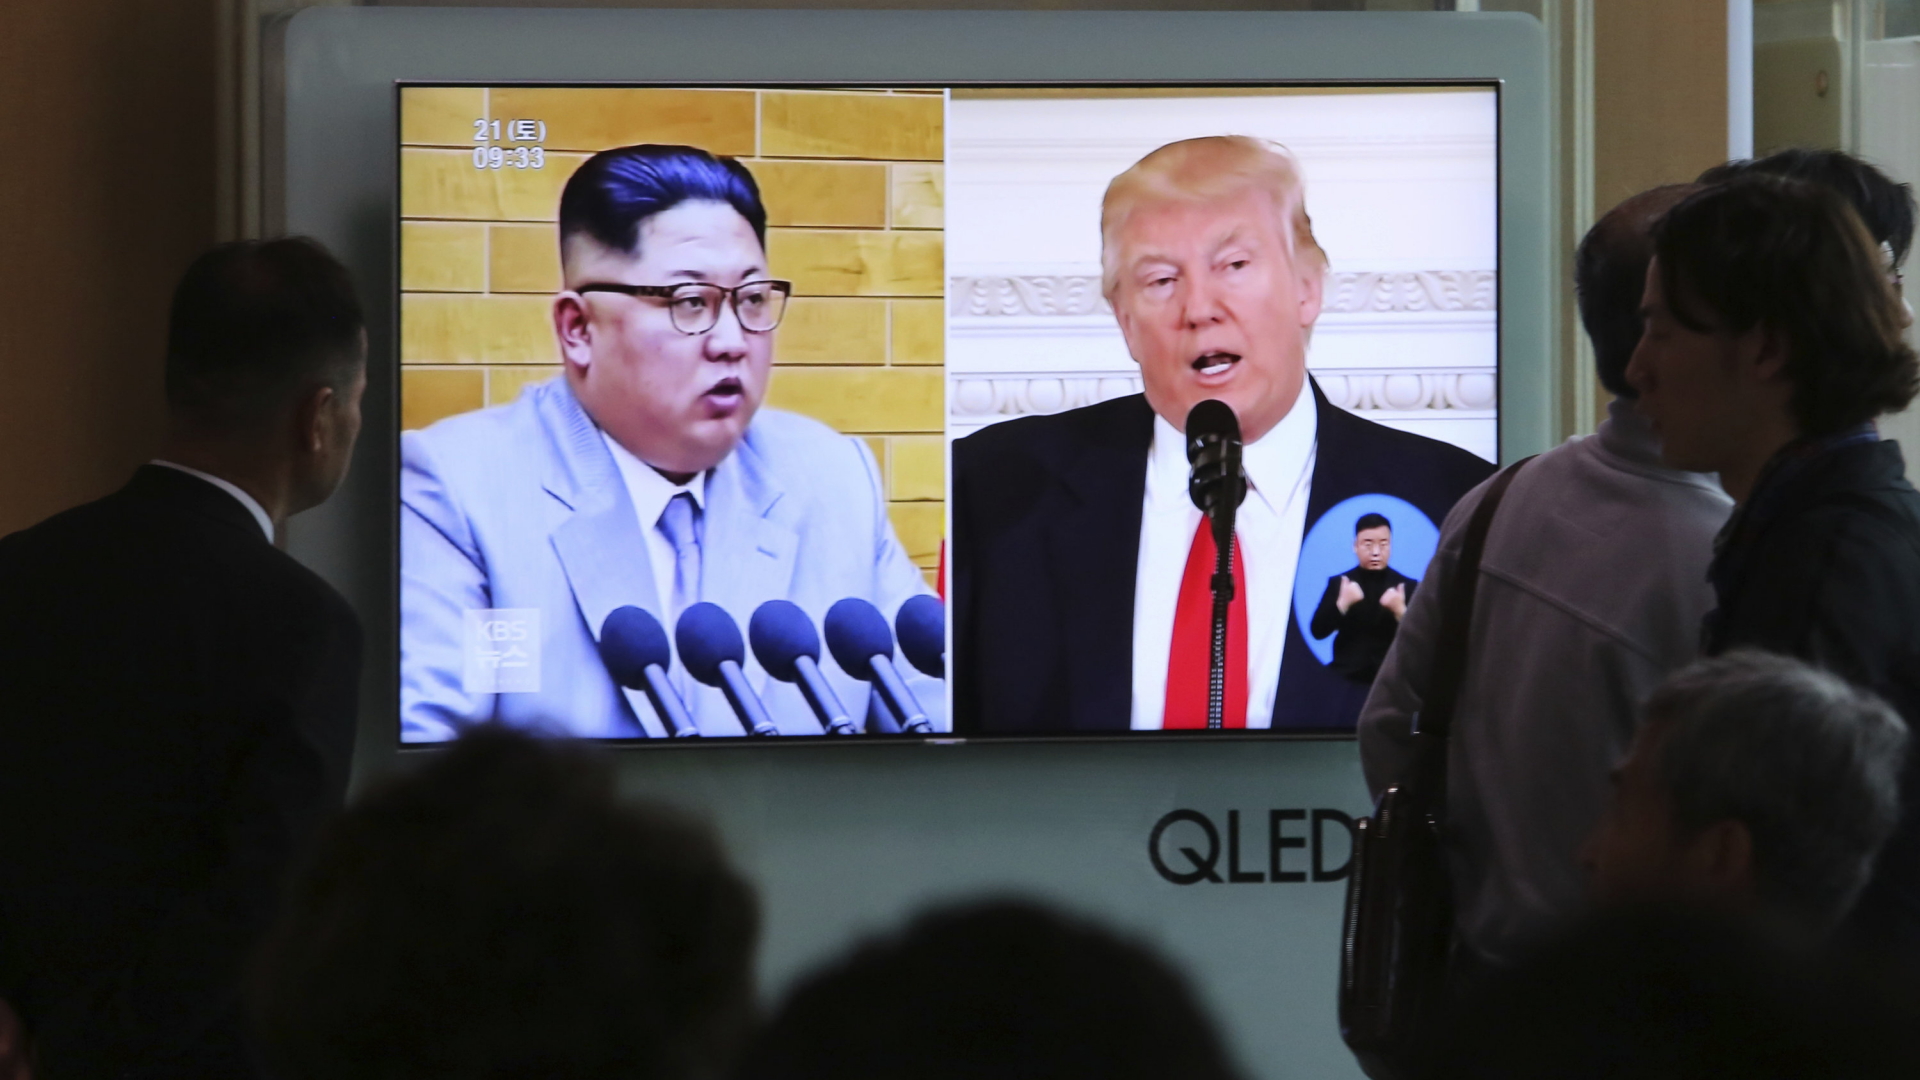 Die Menschen sehen auf einem TV-Bildschirm Archivaufnahmen von US-Präsident Donald Trump und dem nordkoreanischen Führer Kim Jong Un während einer Nachrichtensendung auf dem Seouler Bahnhof.